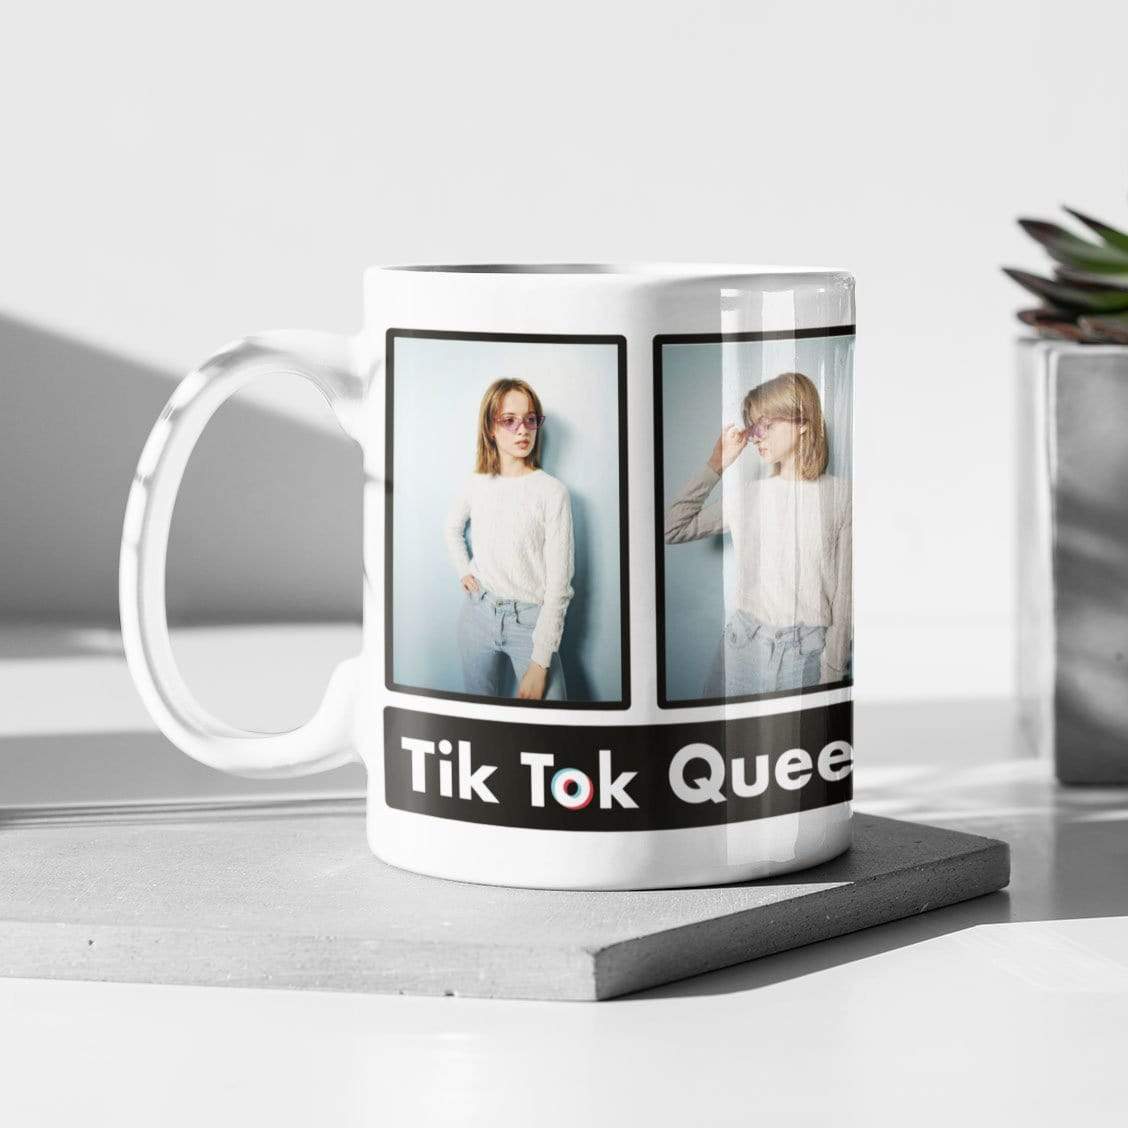 Tik Tok Queen Photo Mug